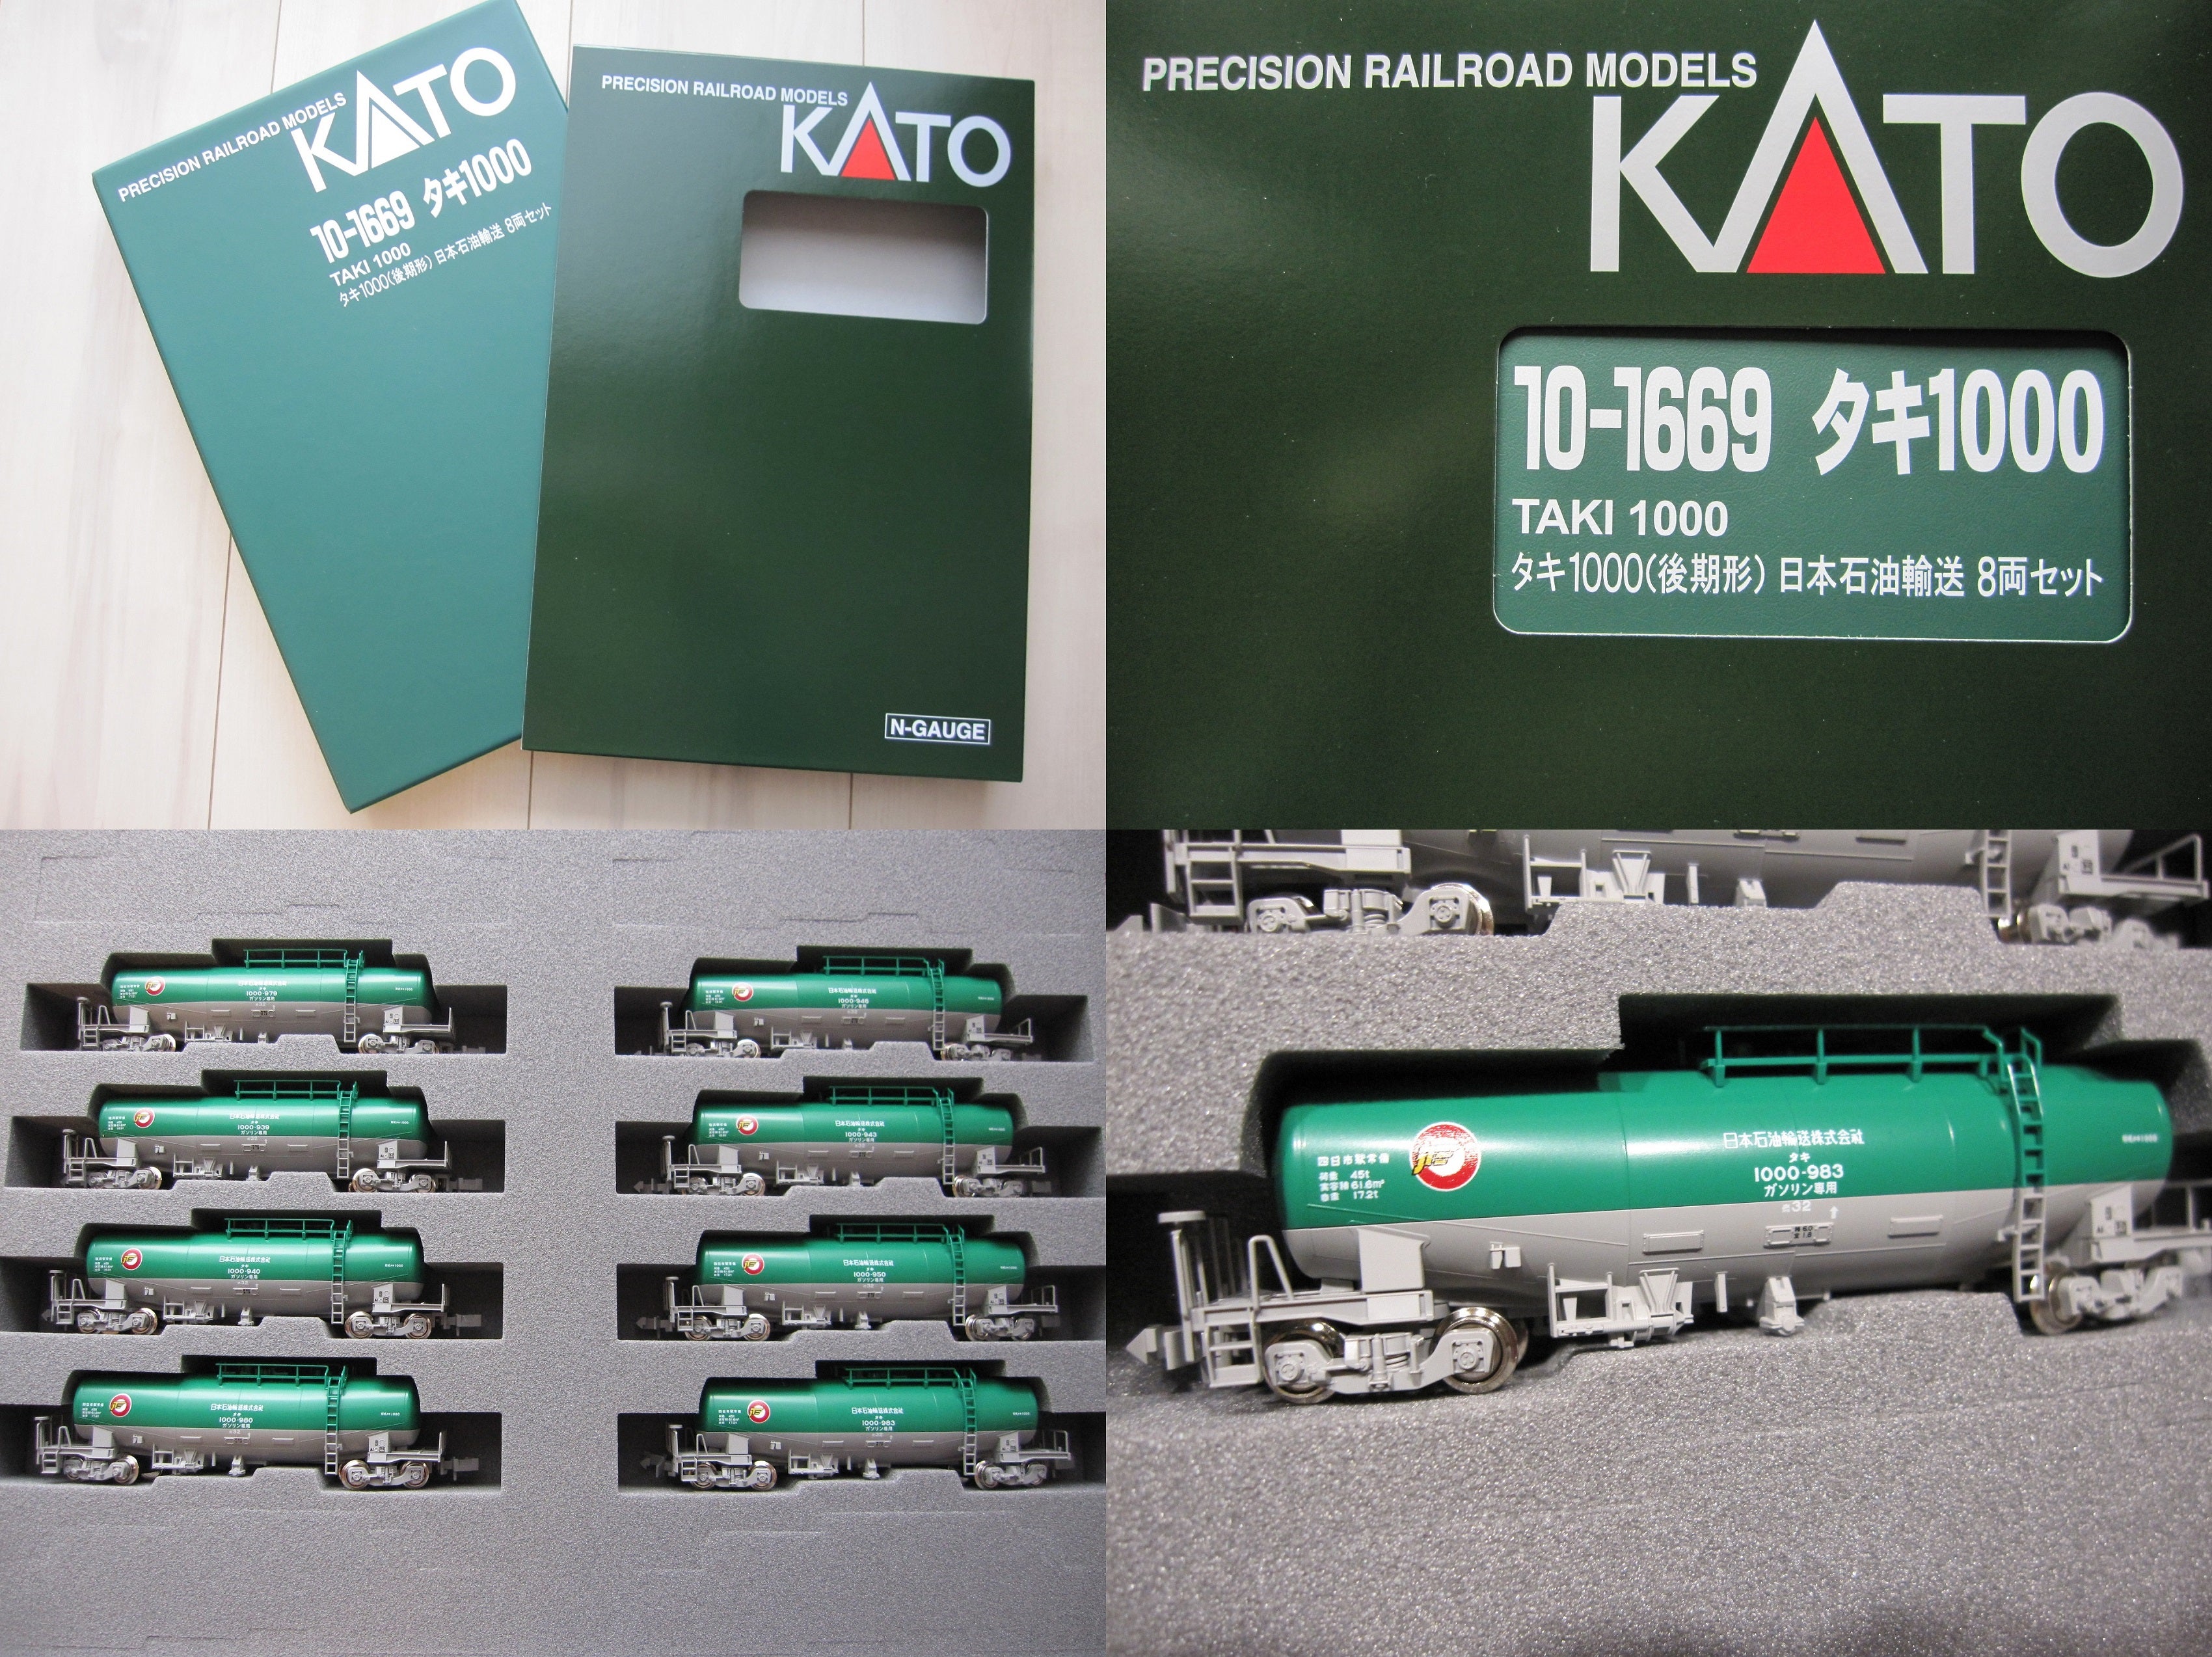 デポー KATO タキ1000 日本石油輸送ENEOSエコレールマーク付き8両 